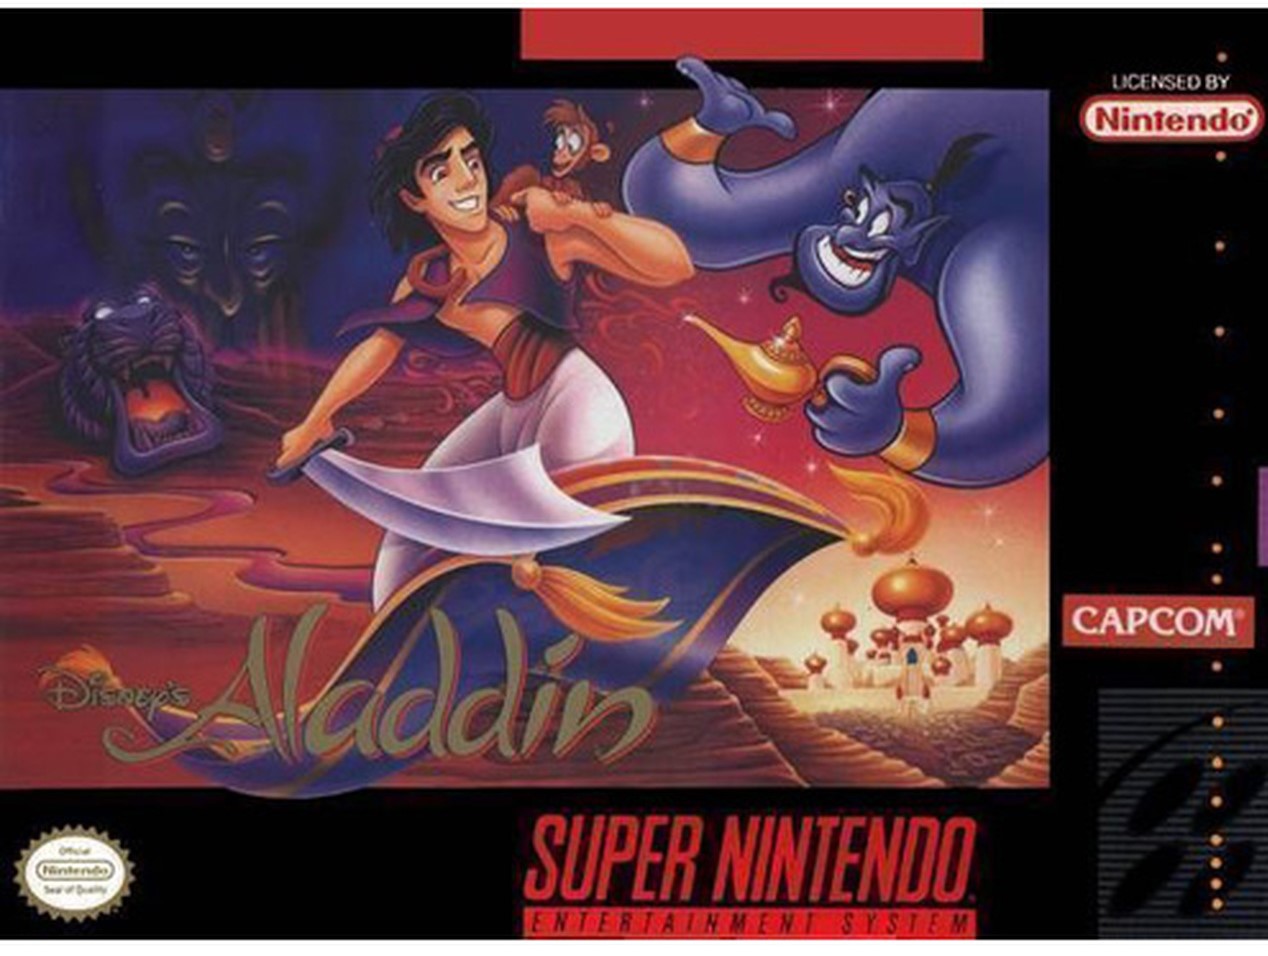 Disneys Aladdin (Csak a kazetta) - Super Nintendo Entertainment System Játékok